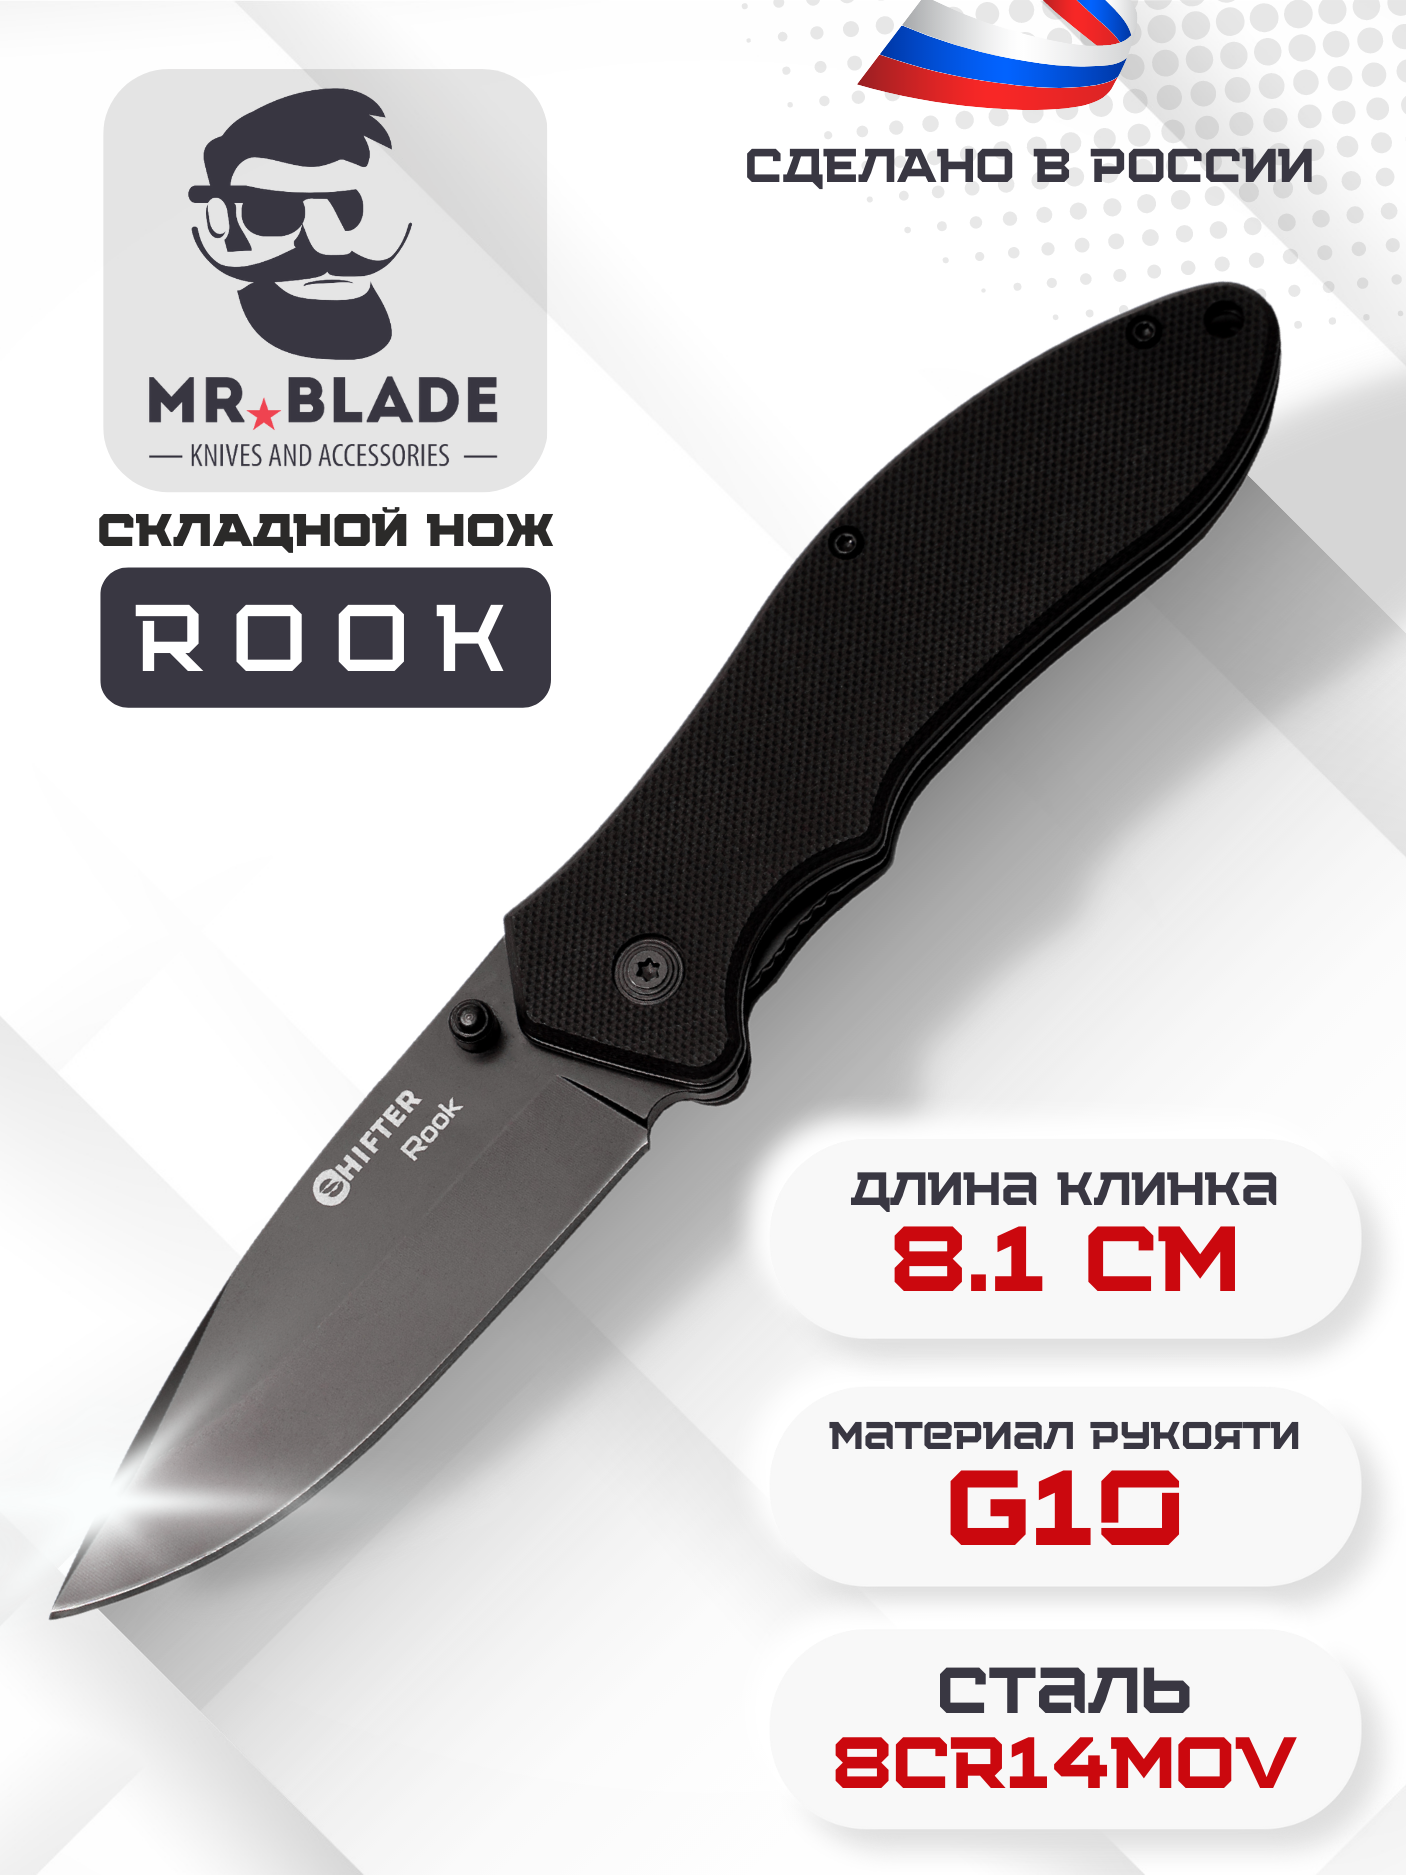 Складной туристический нож Mr.Blade Rook Black